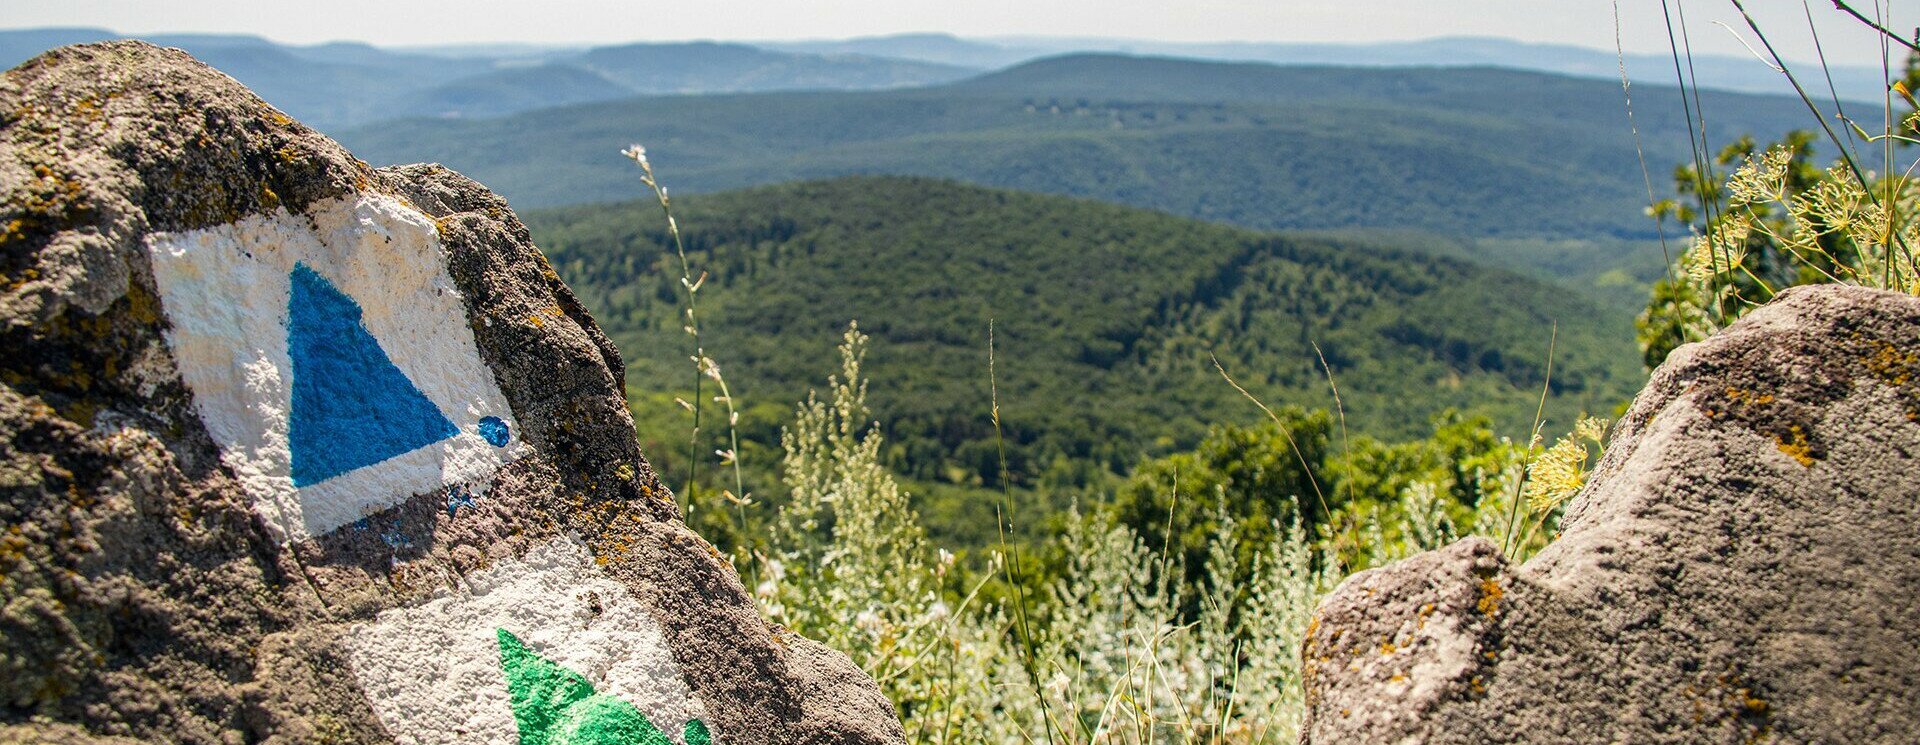 Turista Magazin - Koloska-völgyi kirándulás vadregényes sziklákkal és festői kilátásokkal